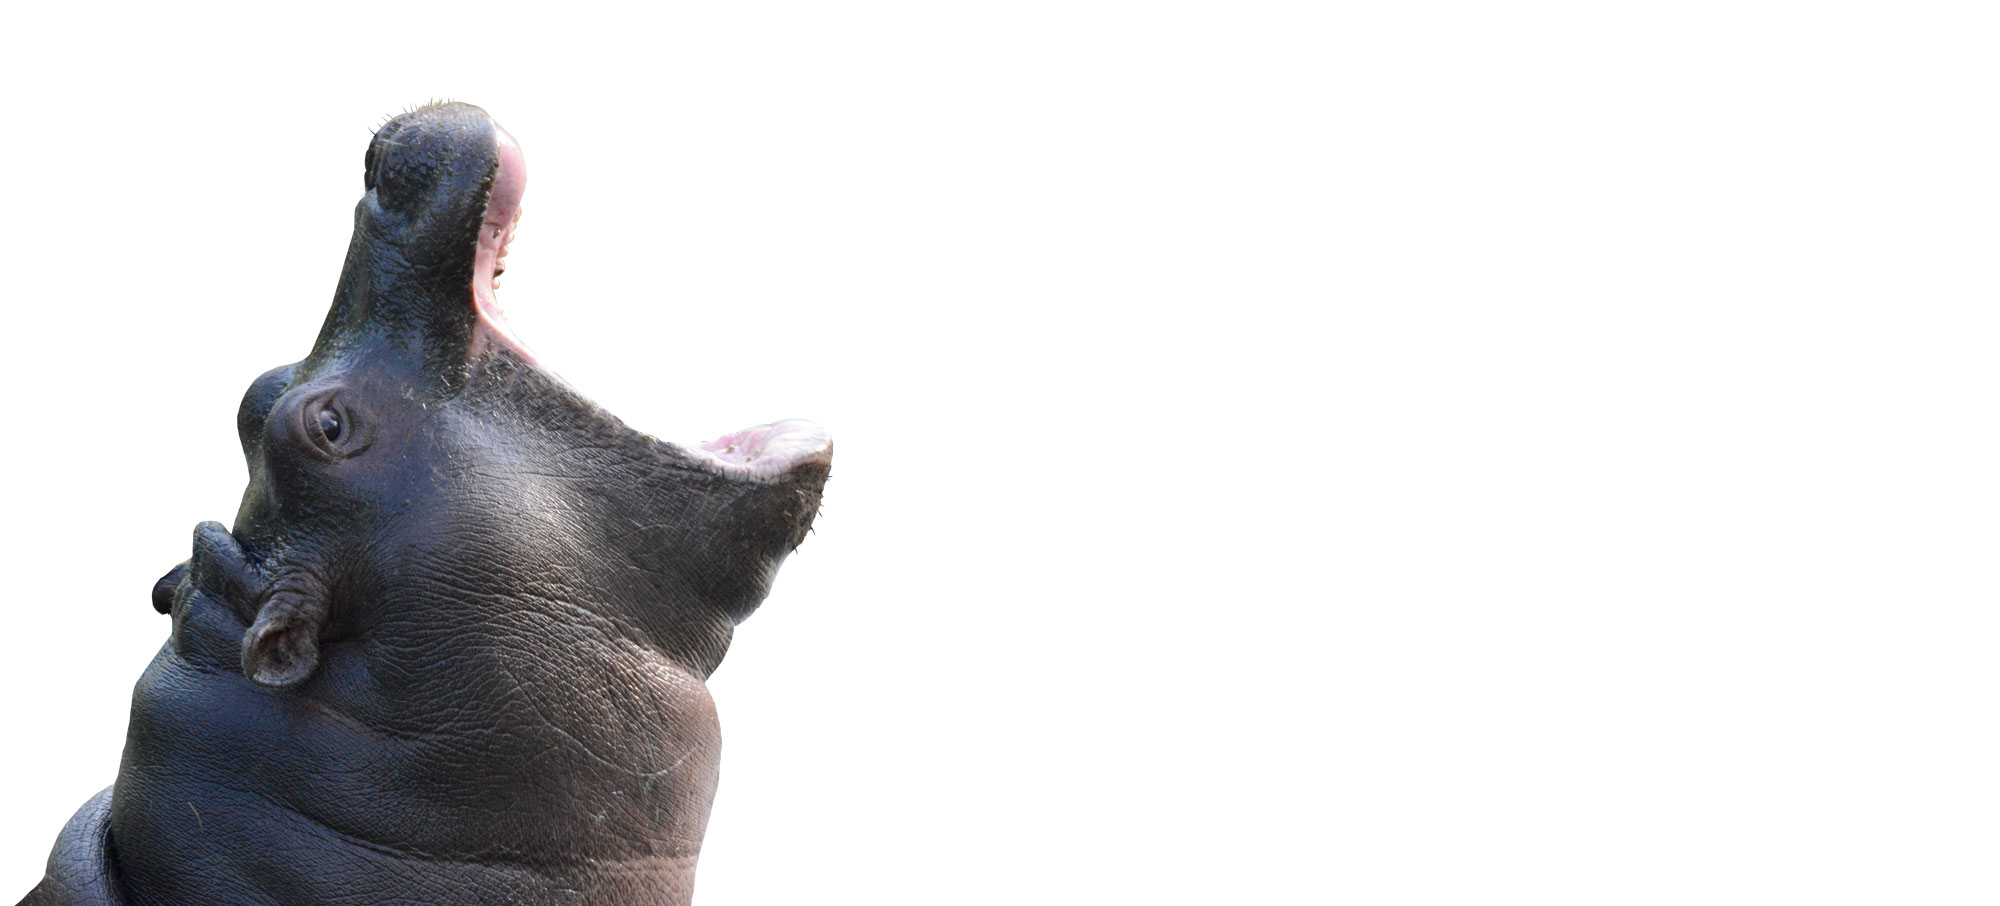 2015-otto-apr30-ippopotamo-06-cucciolo-shombai-scontorno-attenti-alla-schiena.jpg